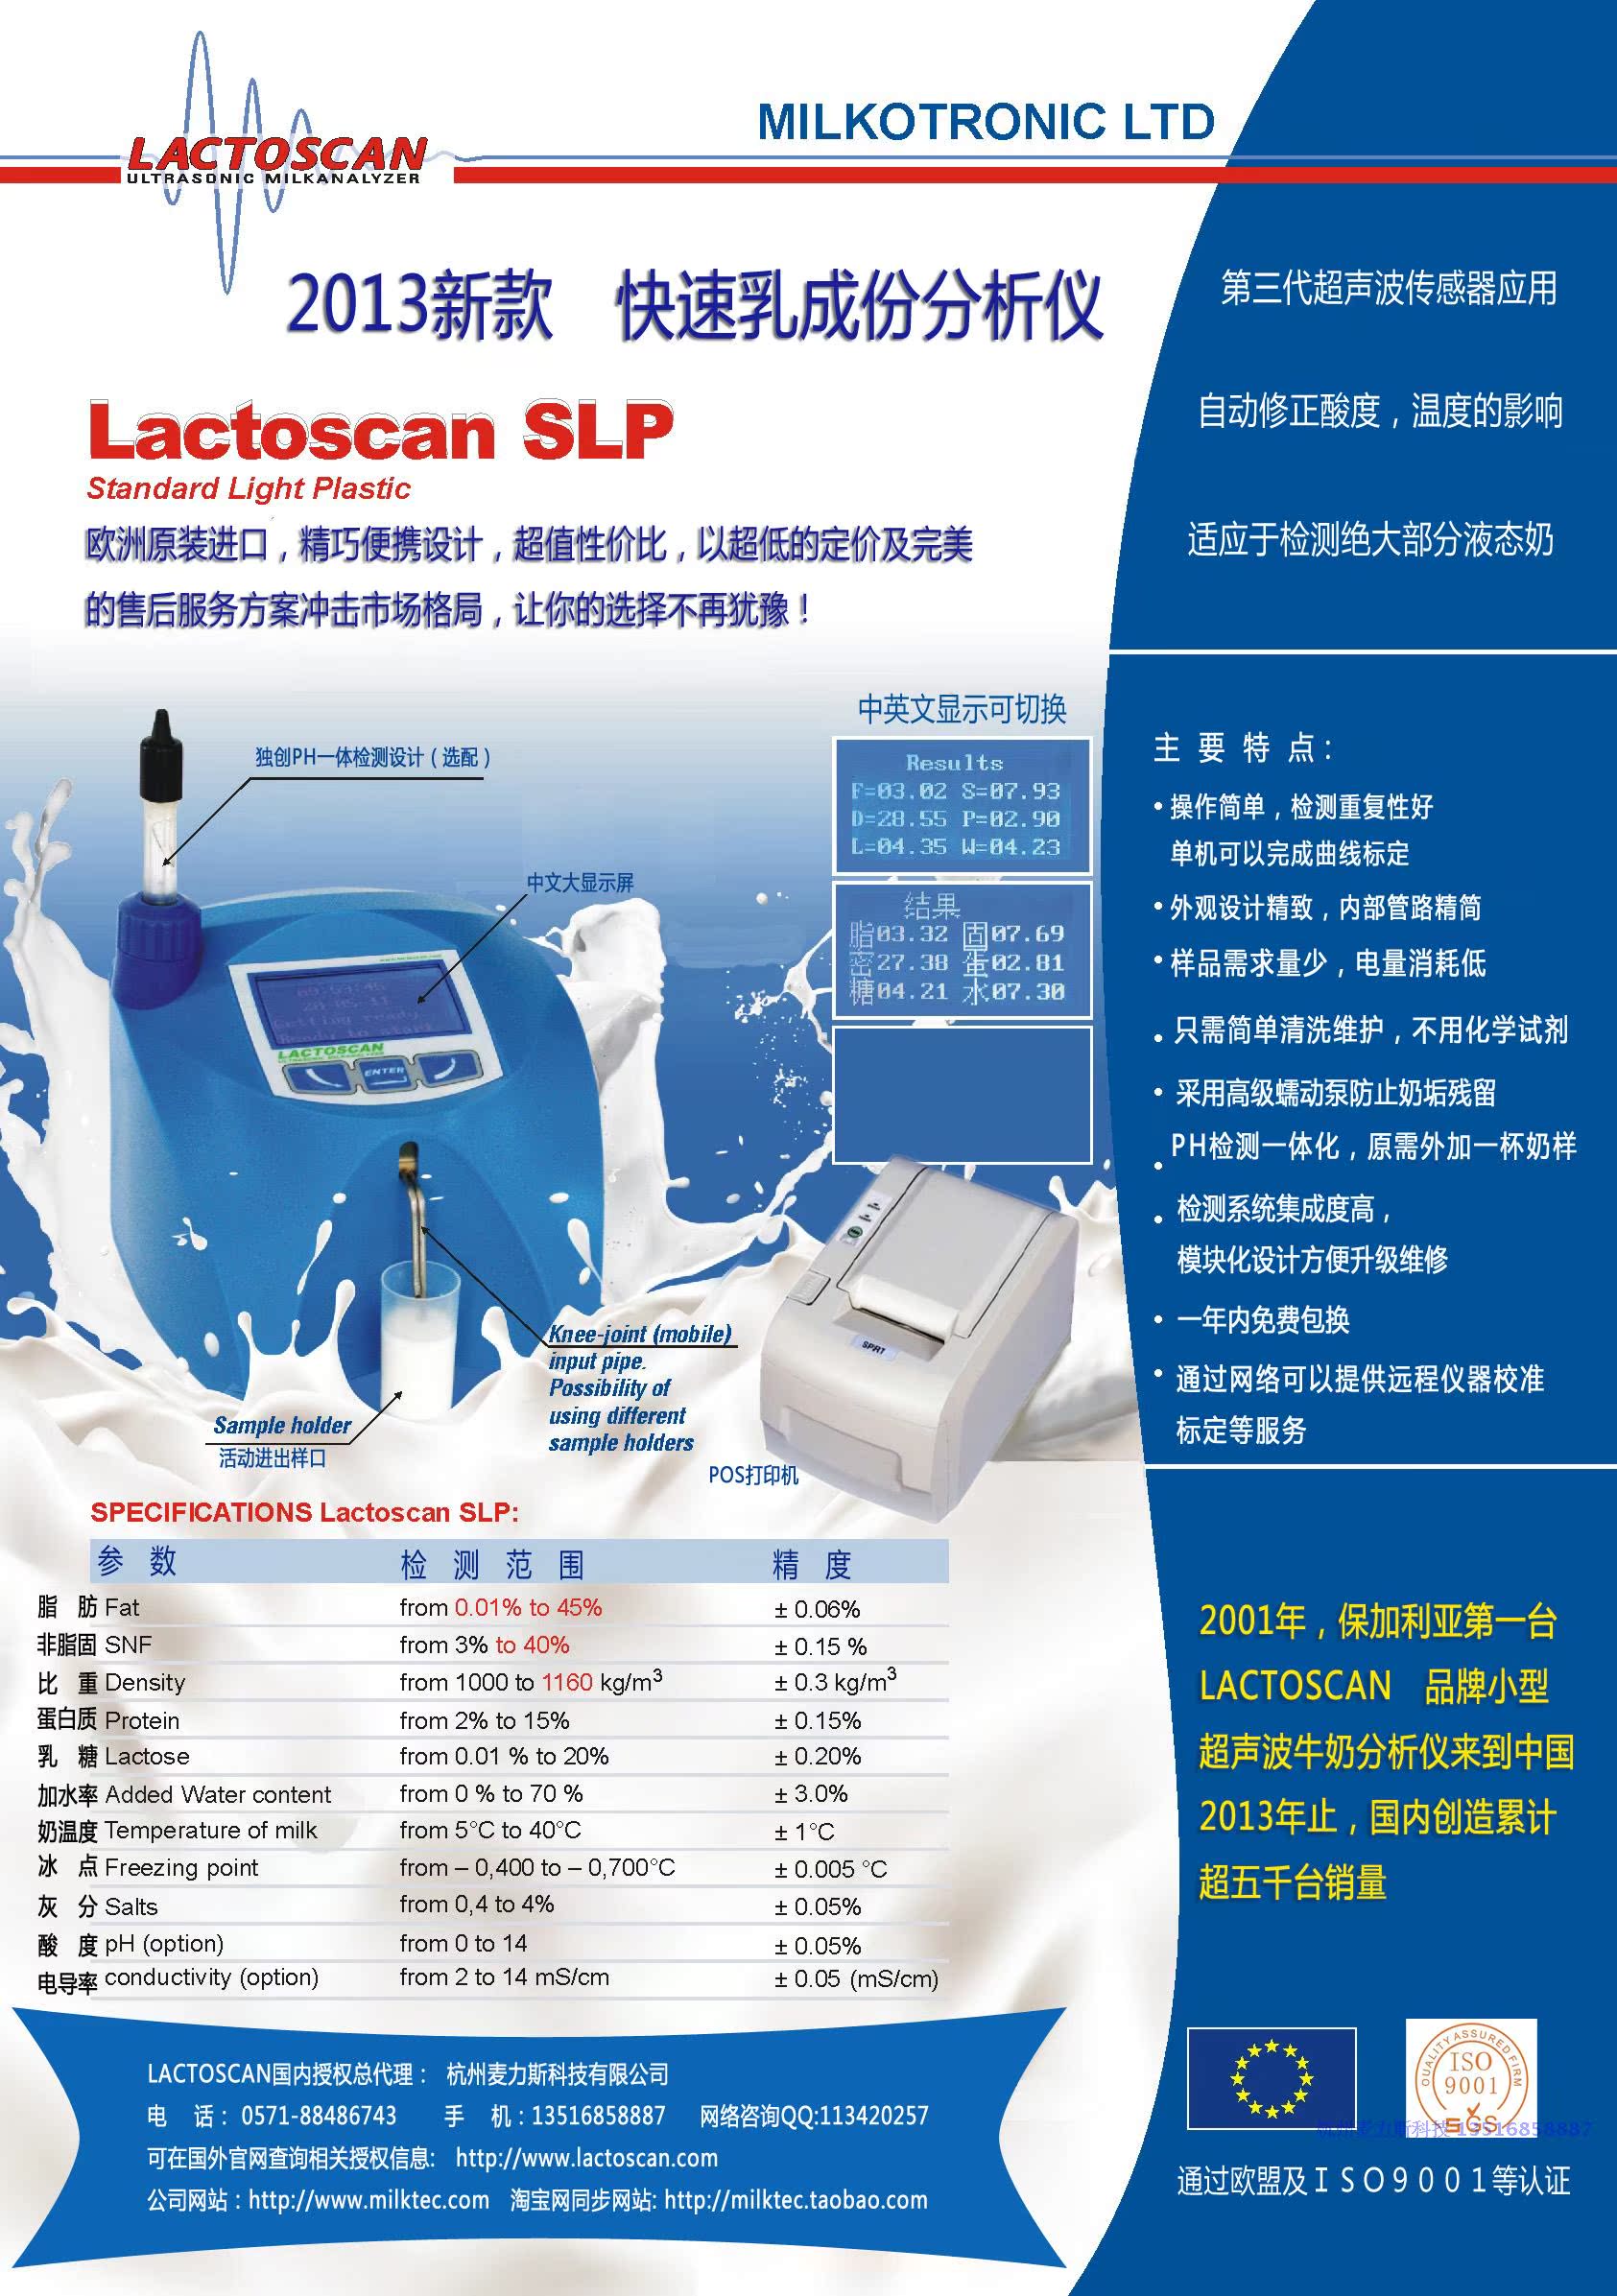 北京铭成基业lactoscan SLP 牛奶分析仪 现货热